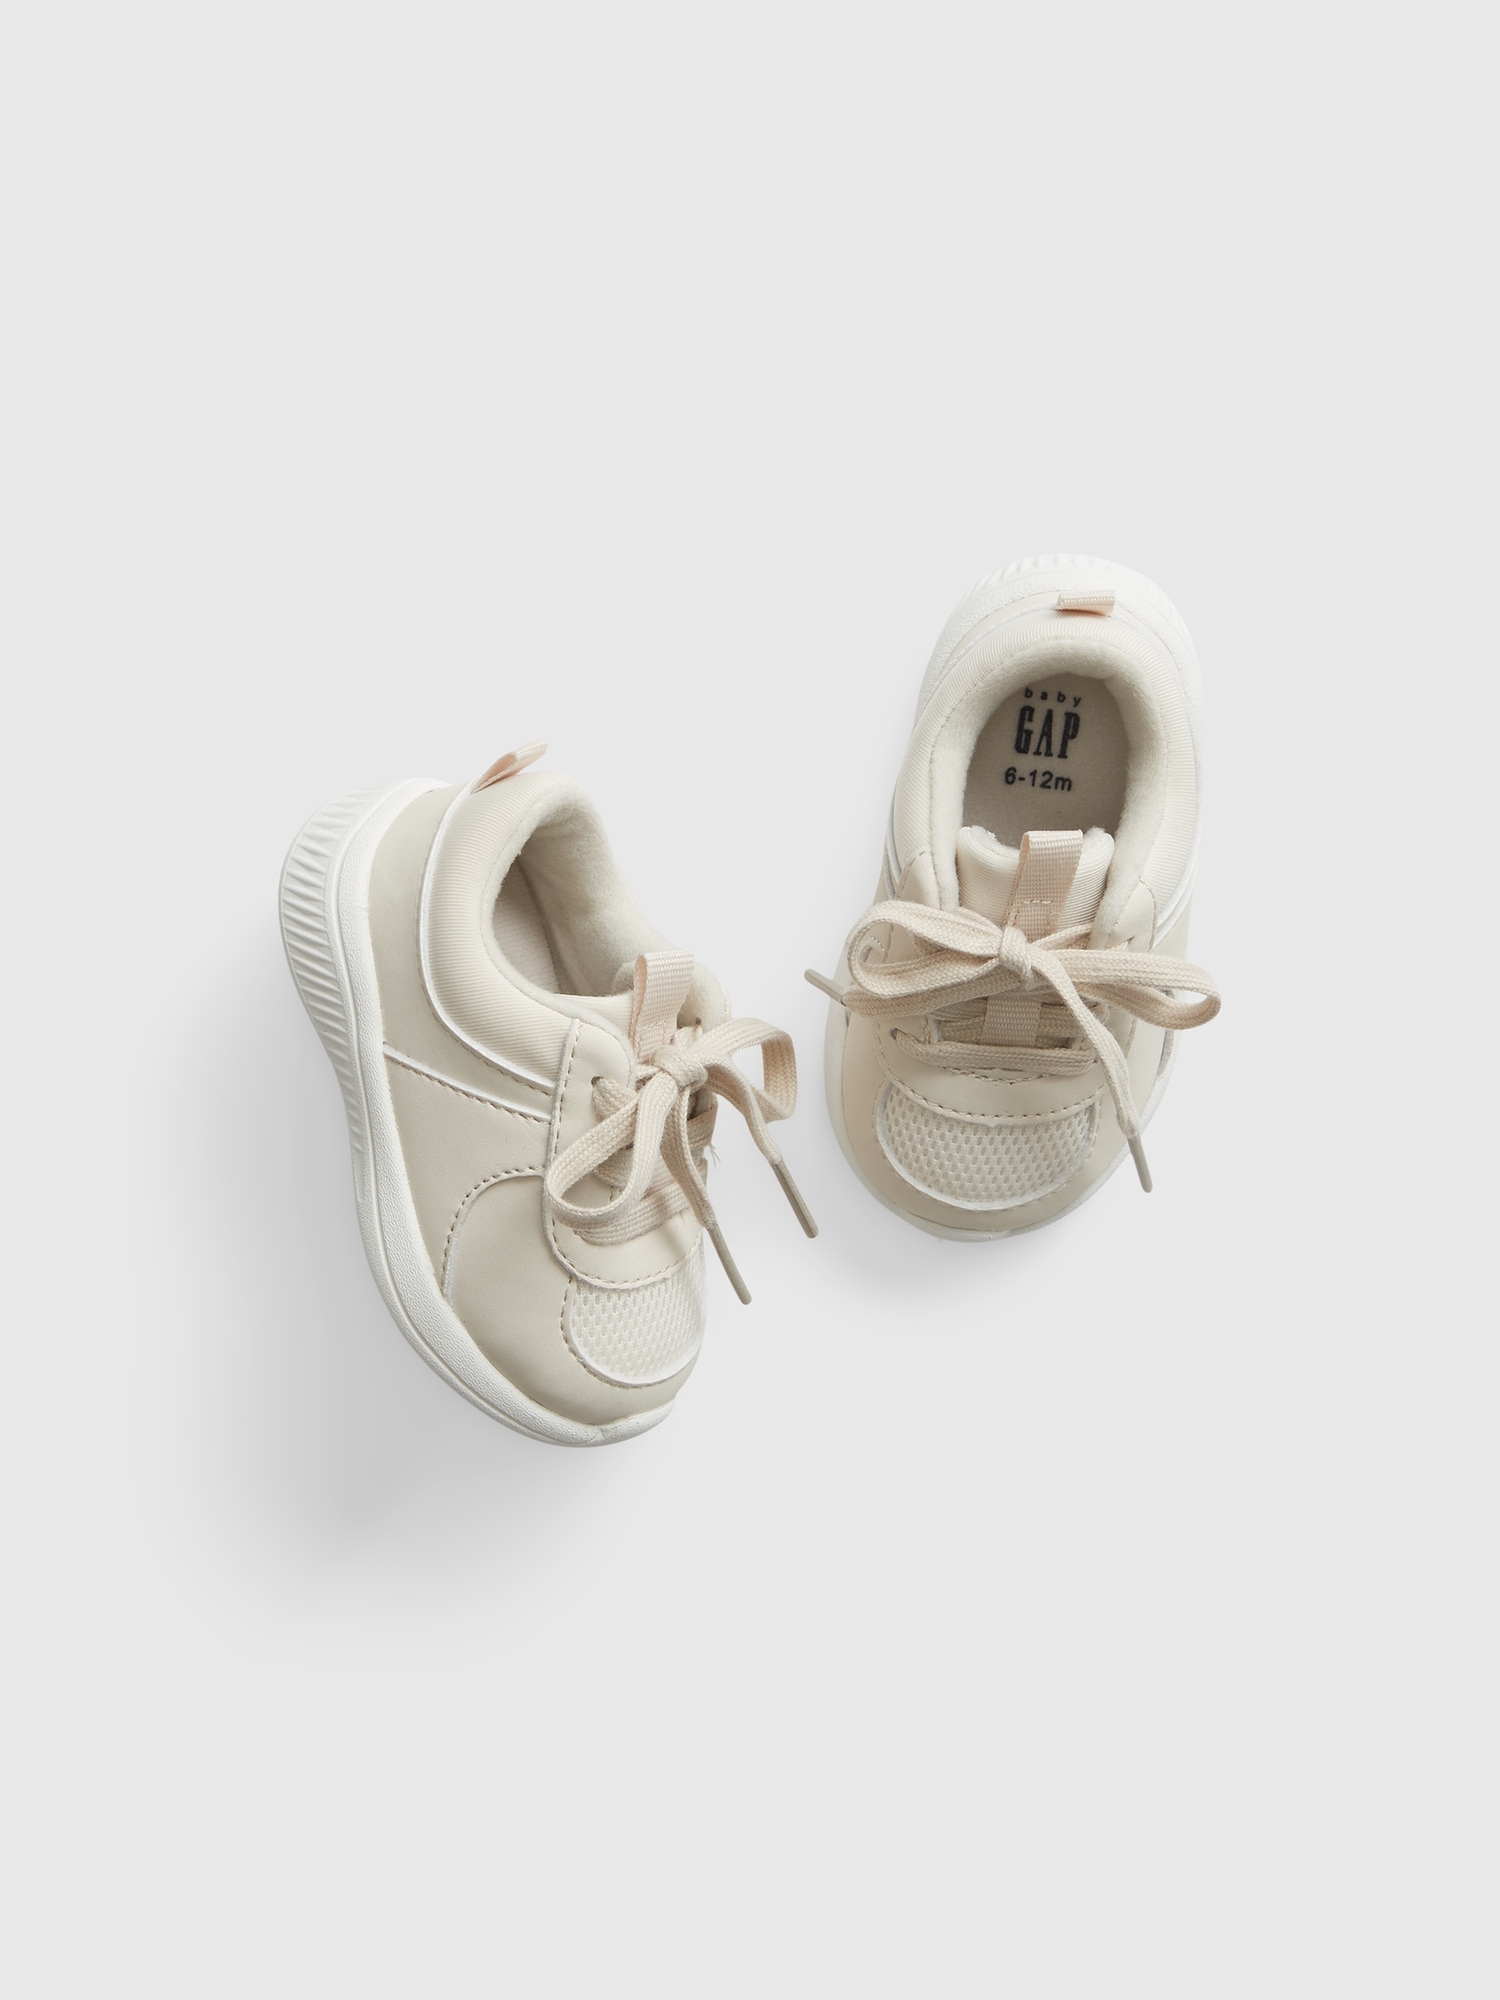 Gap Baby Sneakers